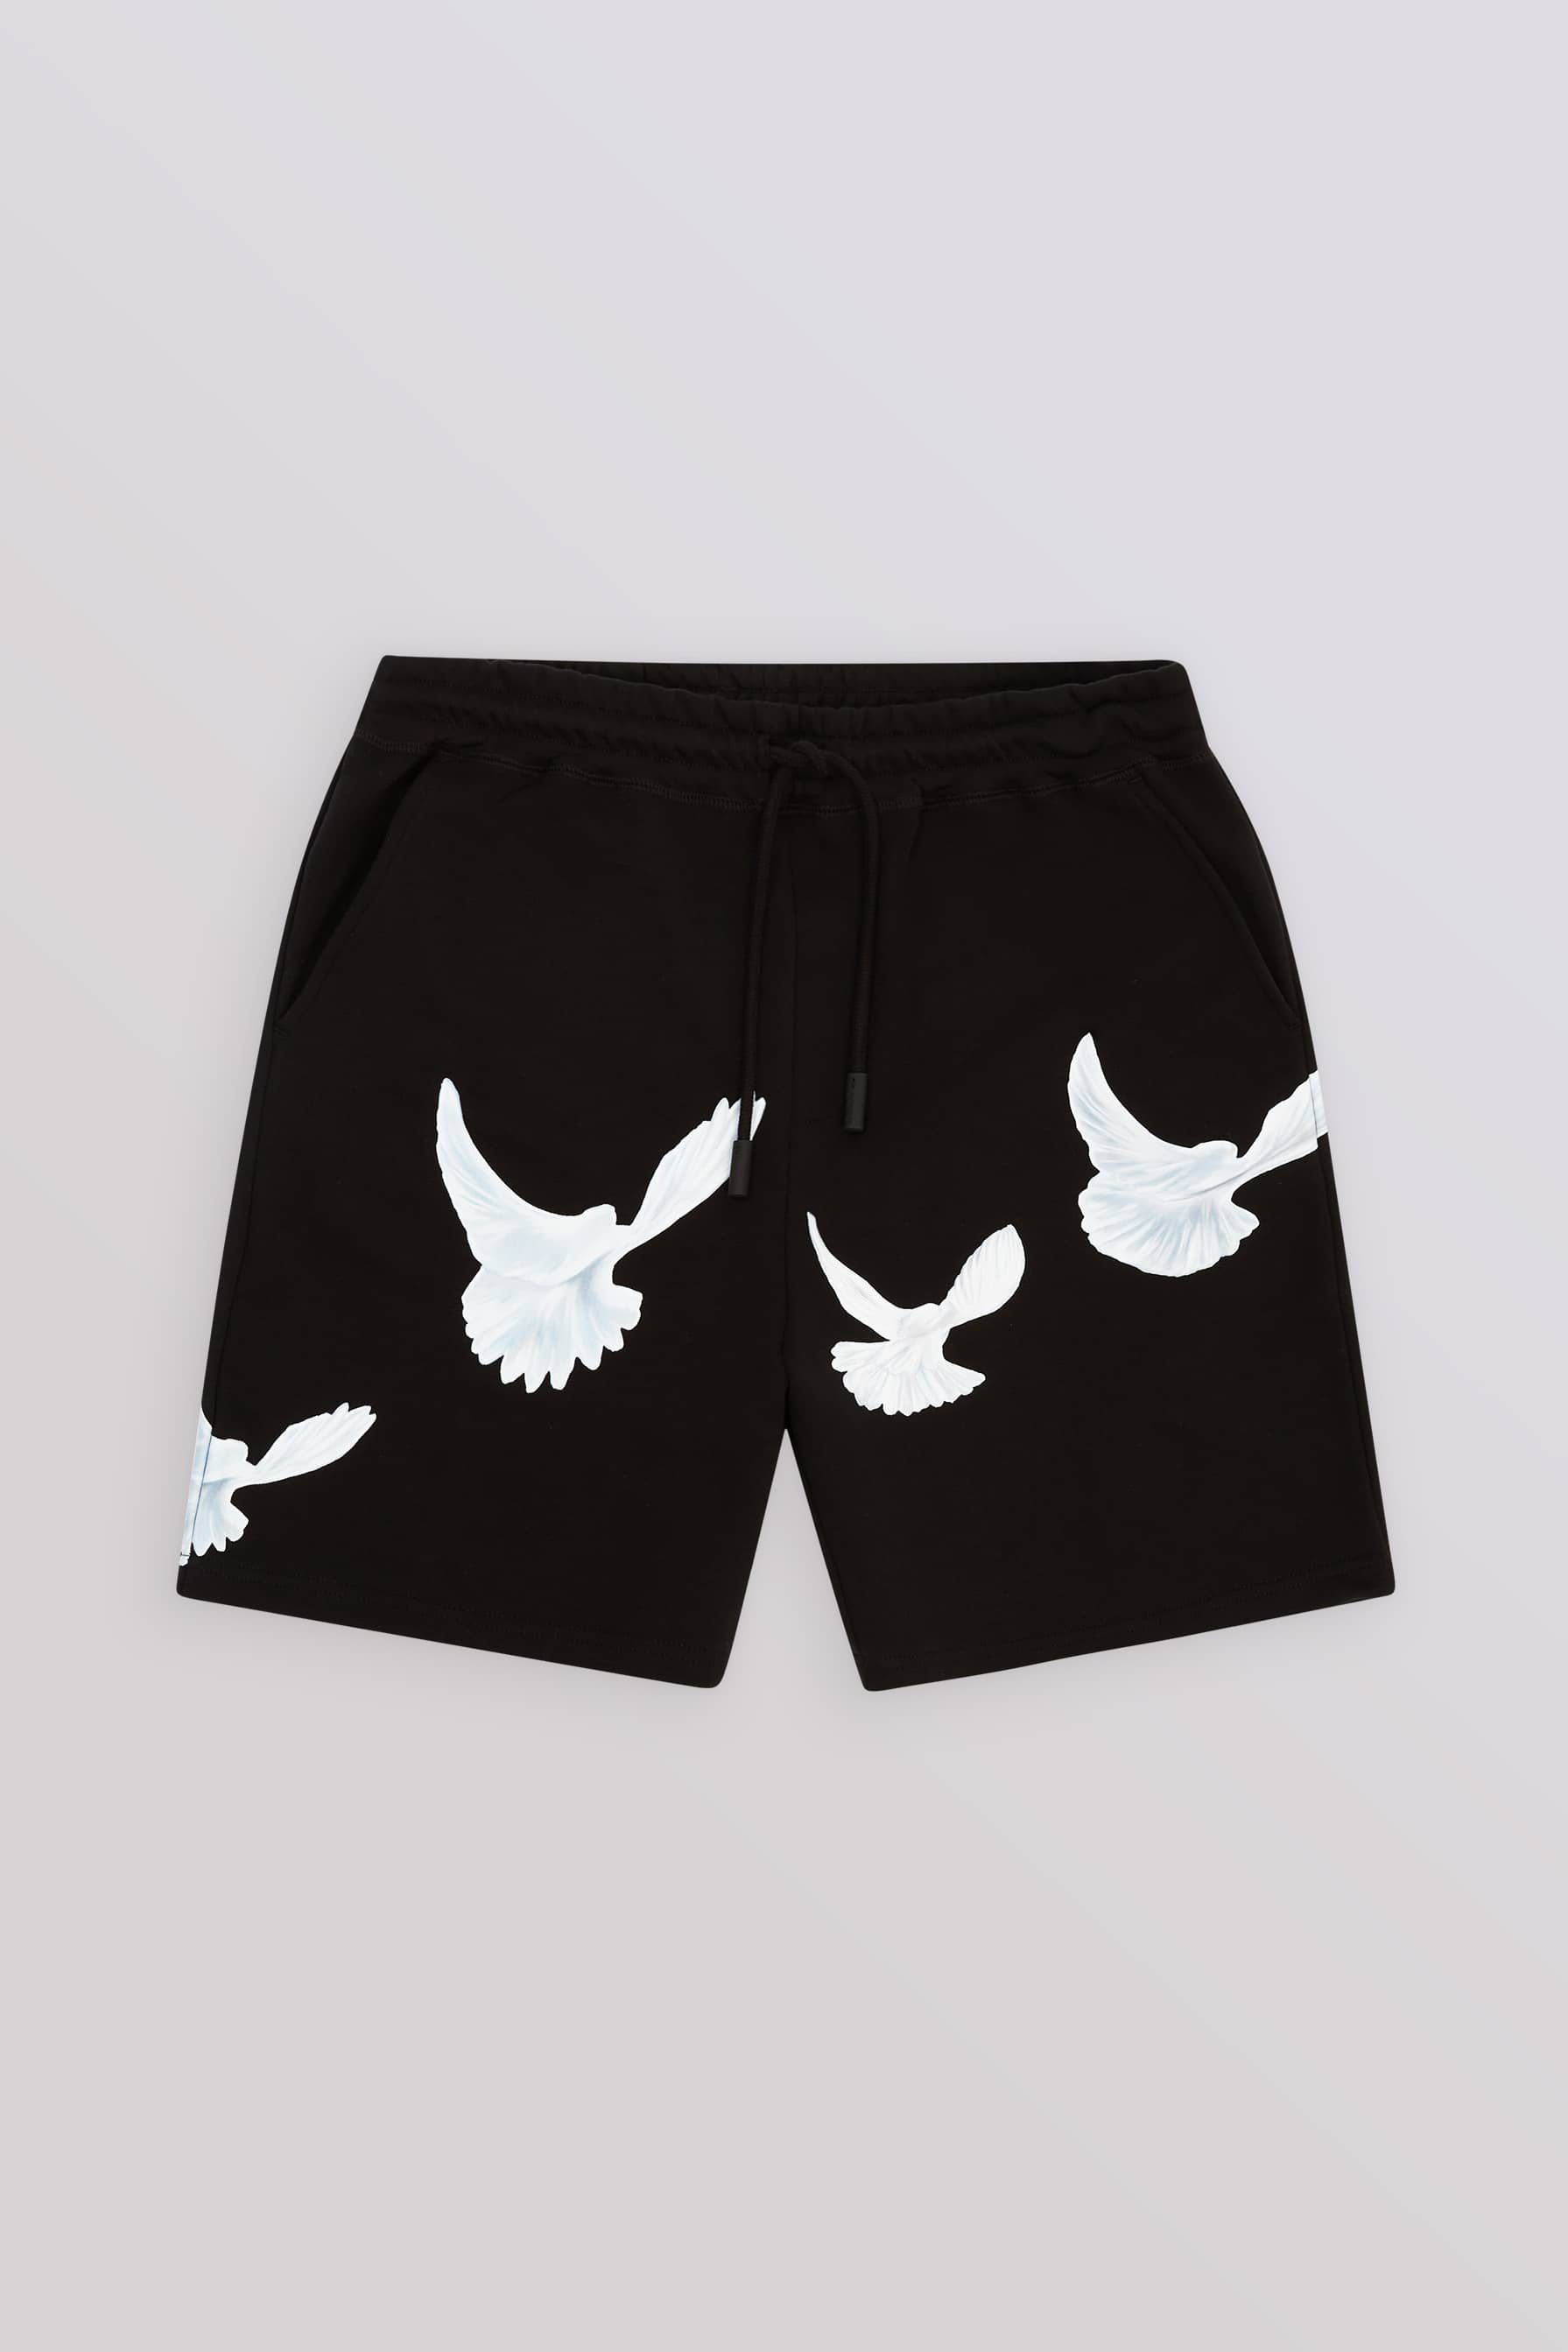 Singing Doves Lounge Shorts